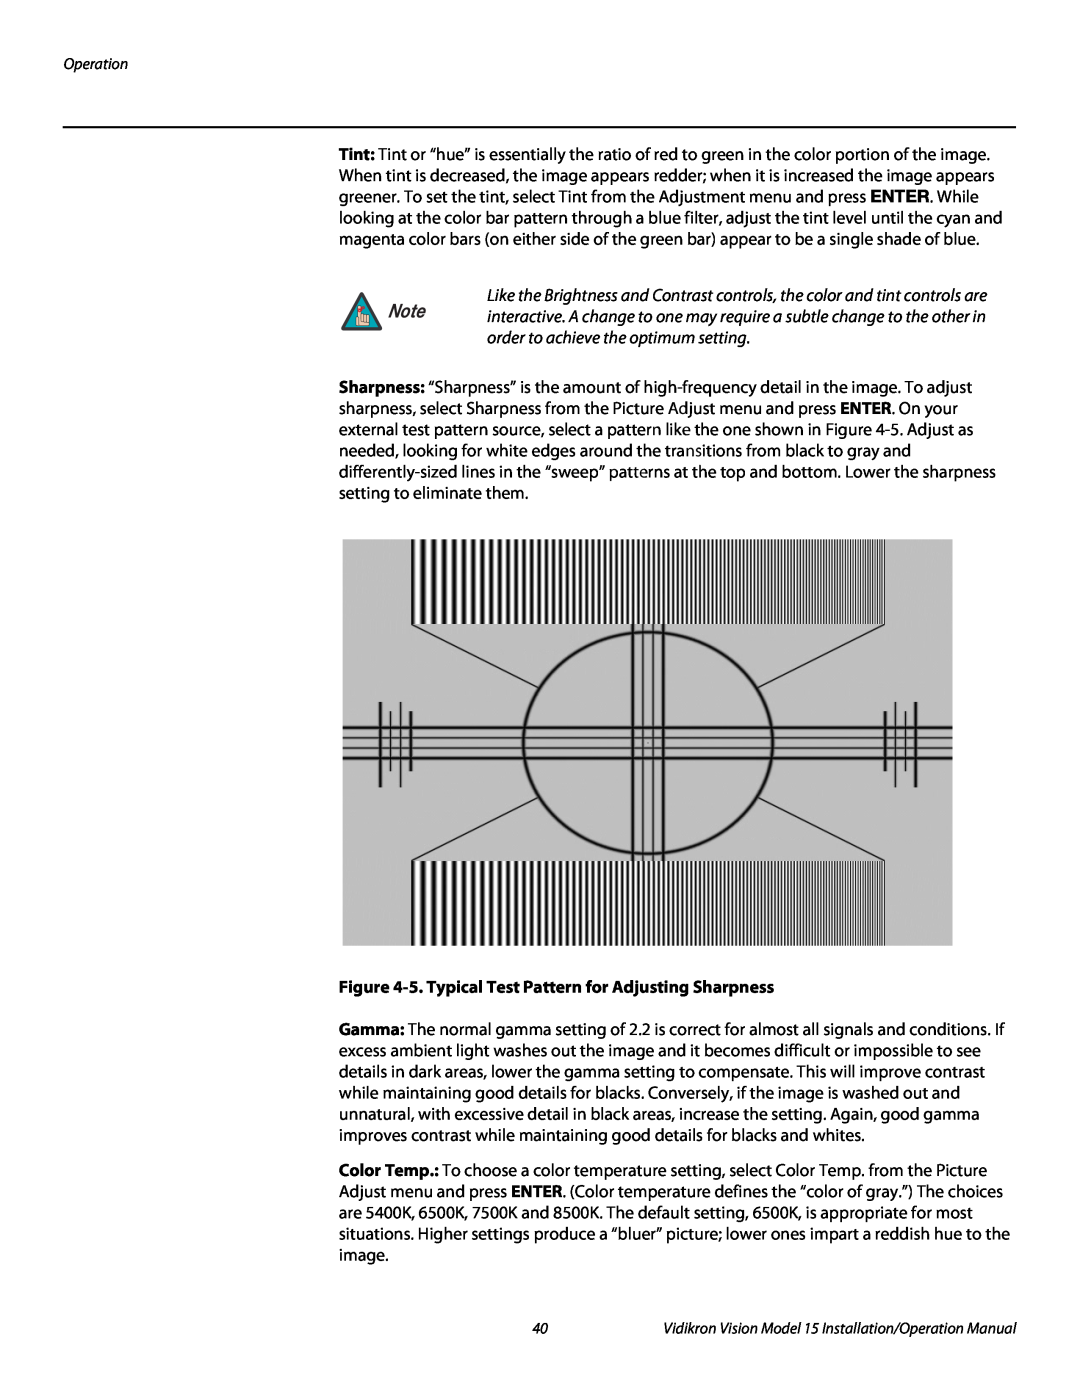 Vidikron Vision 15ET/CineWideTM operation manual 5. Typical Test Pattern for Adjusting Sharpness 